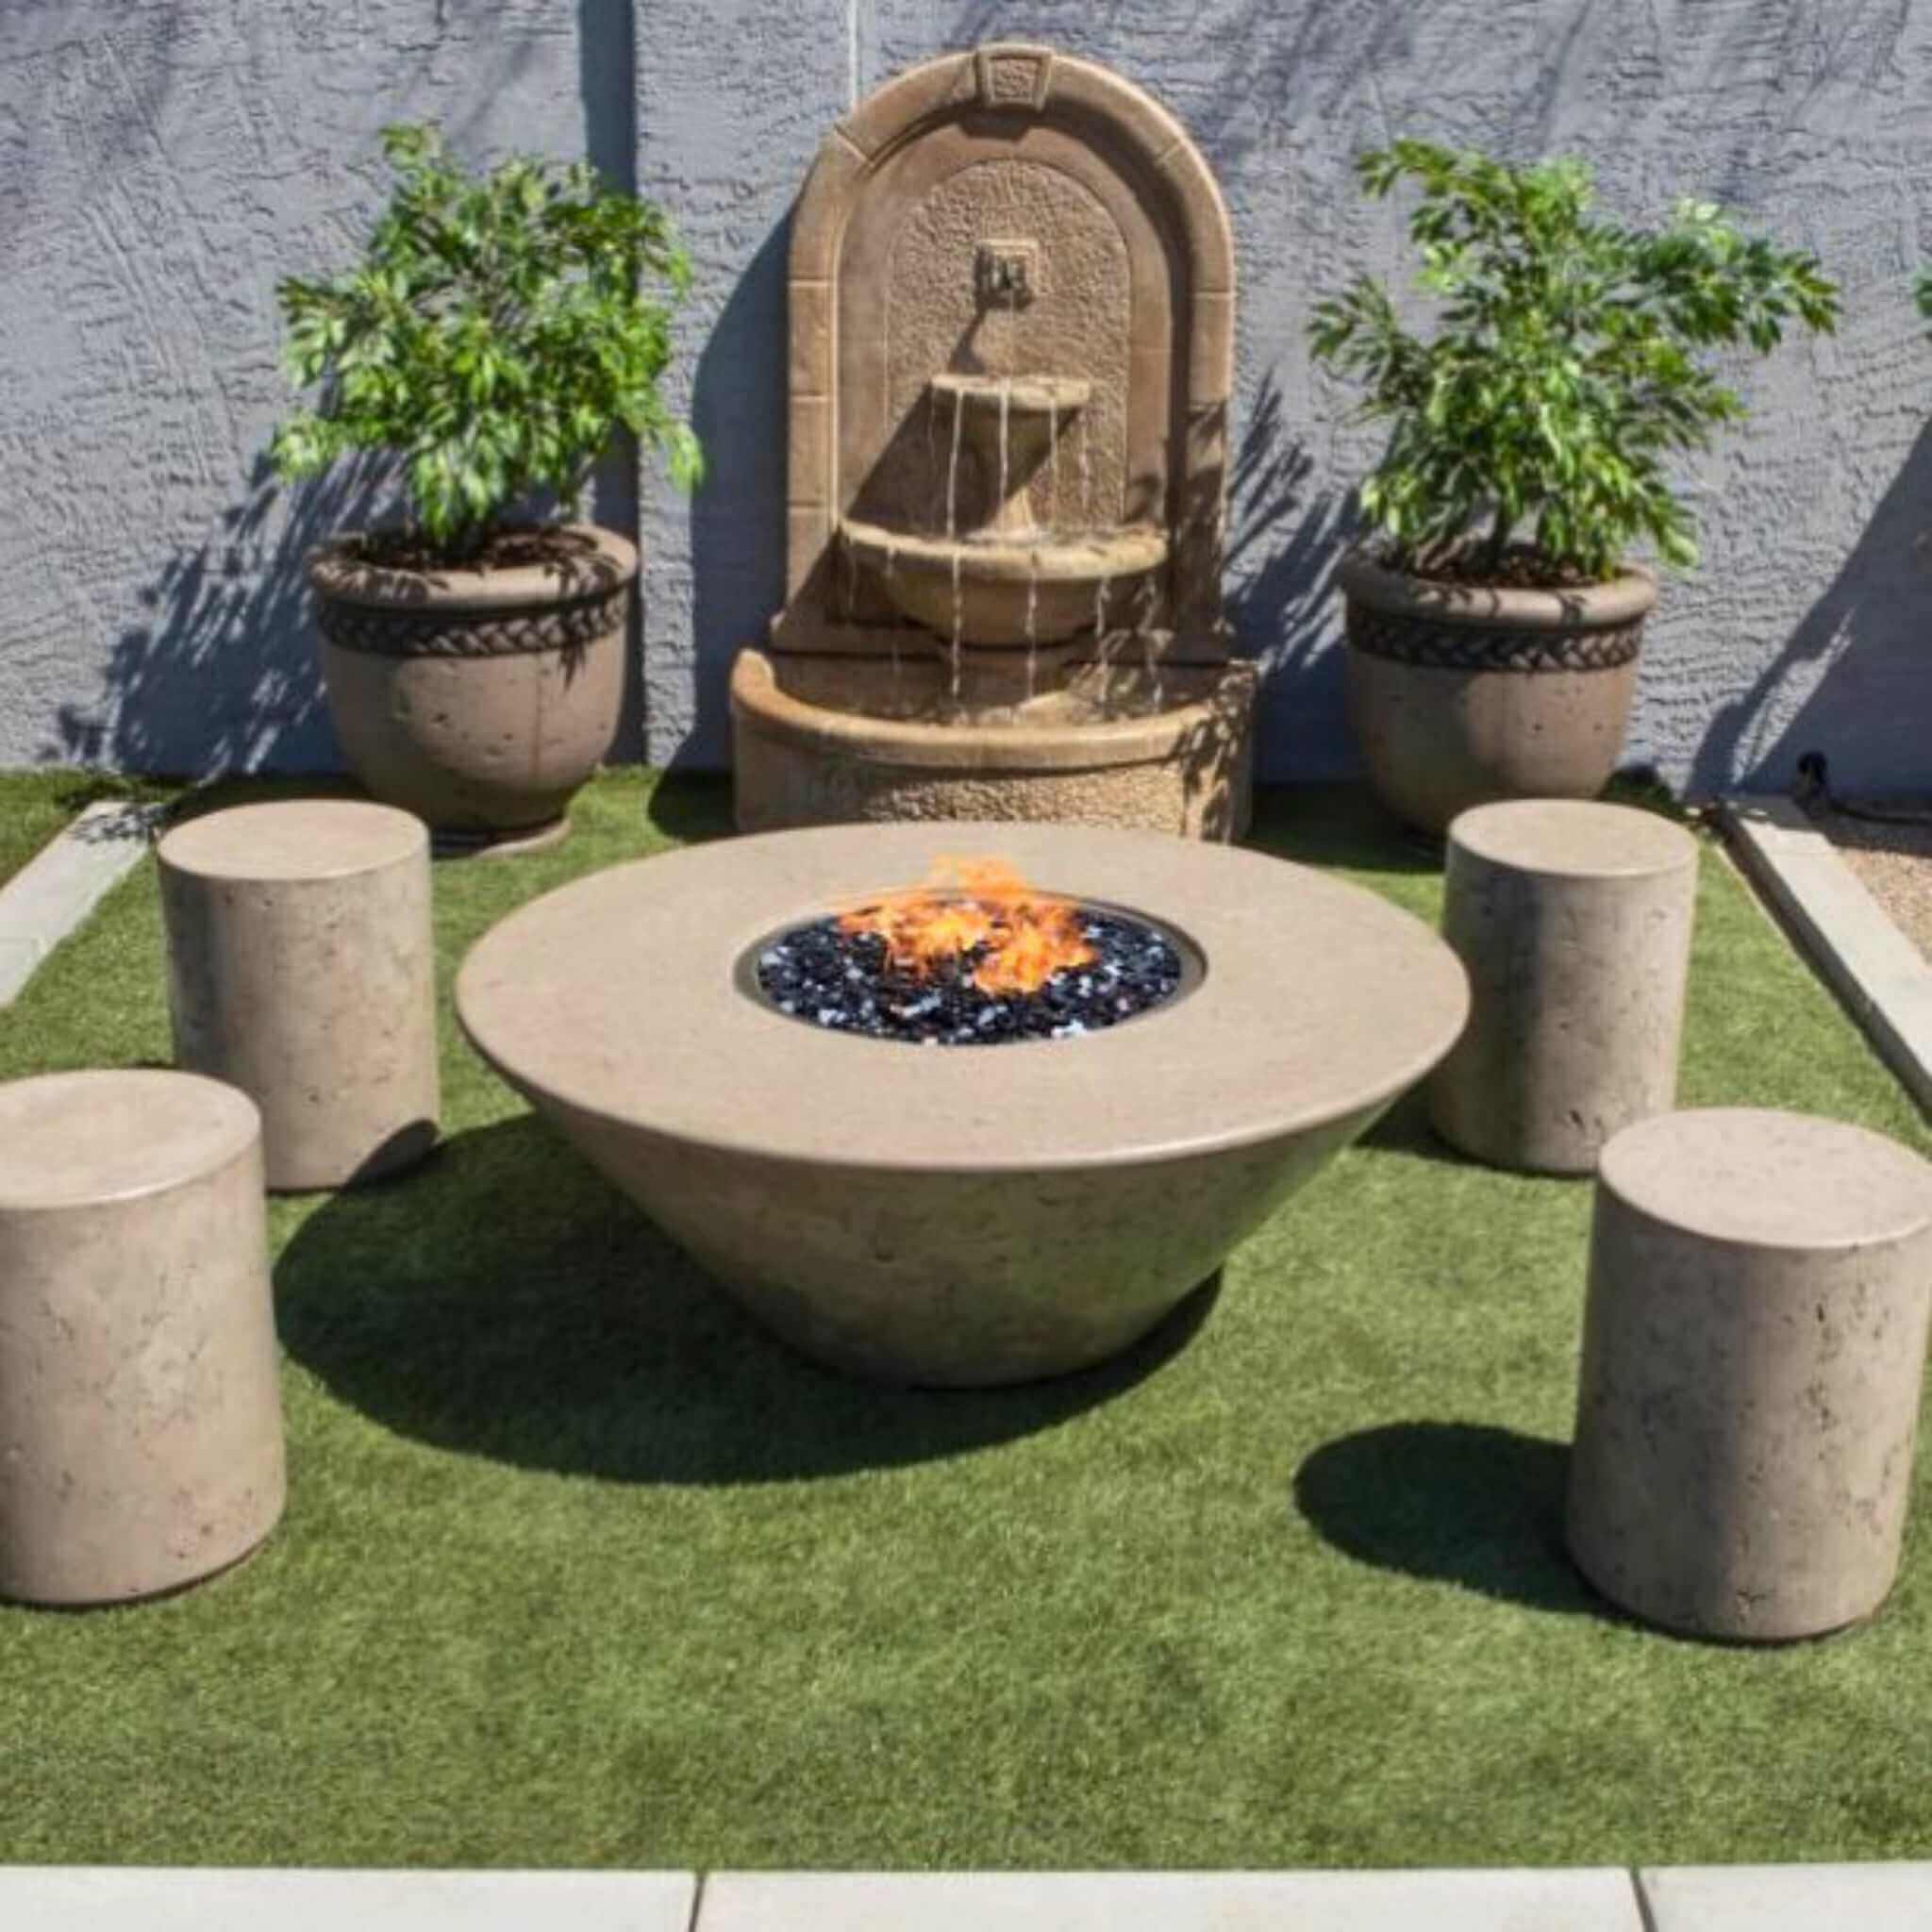 Round Oblique Concrete Gas Fire Table - Phoenix Design Cast